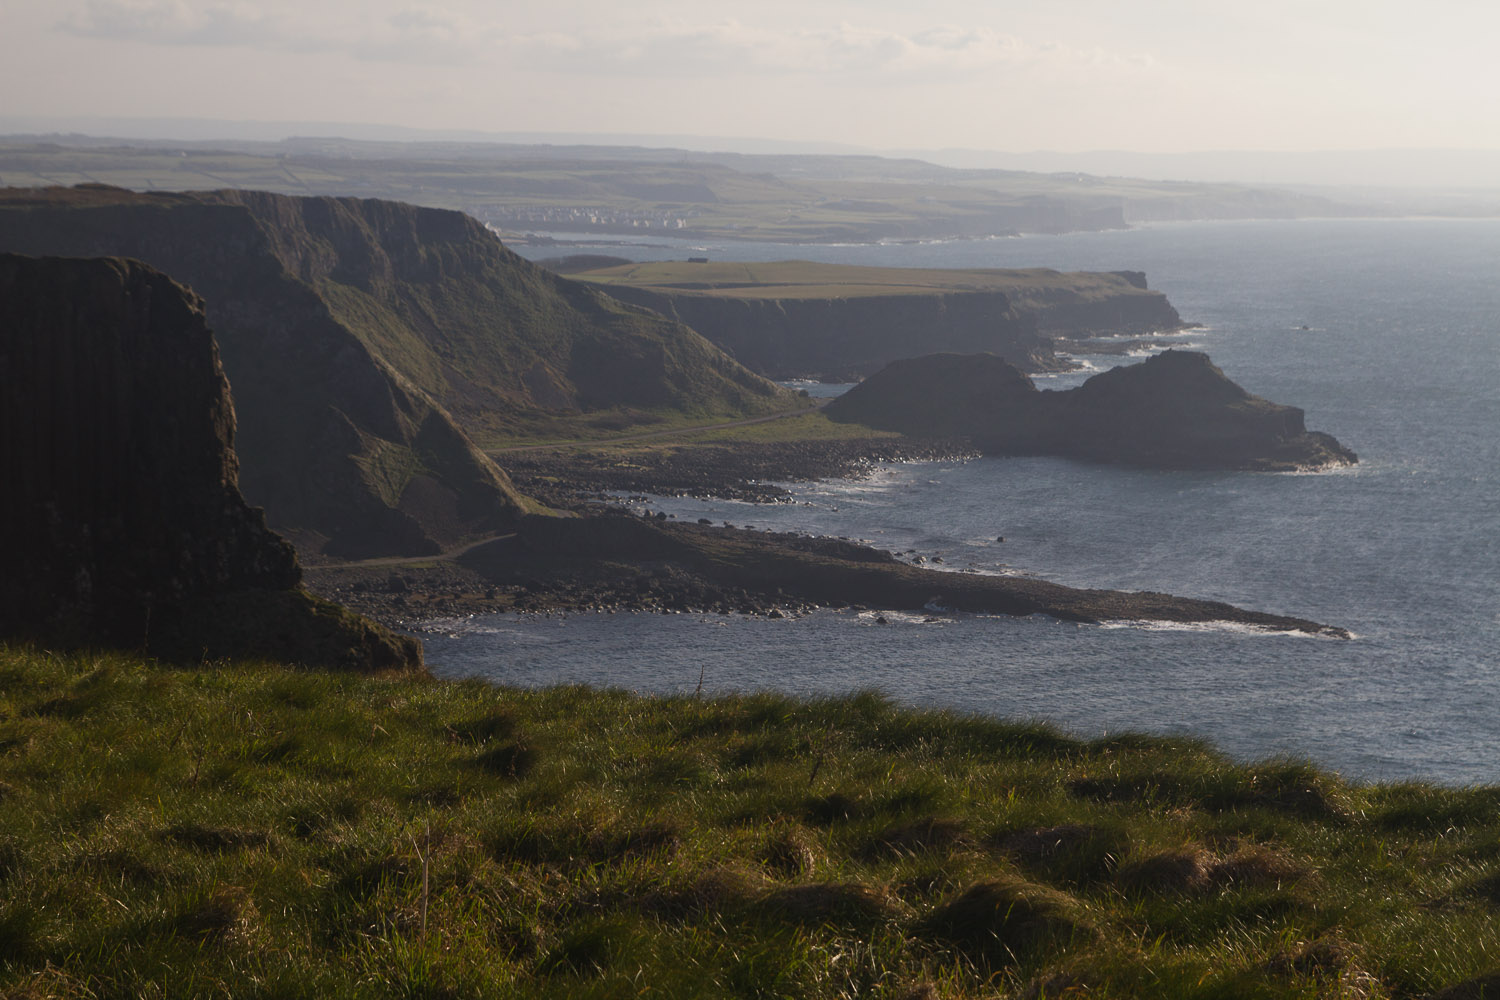 Las vistas de la Costa de la Calzada, con la Calzada del Gigante incluida, Irlanda del Norte